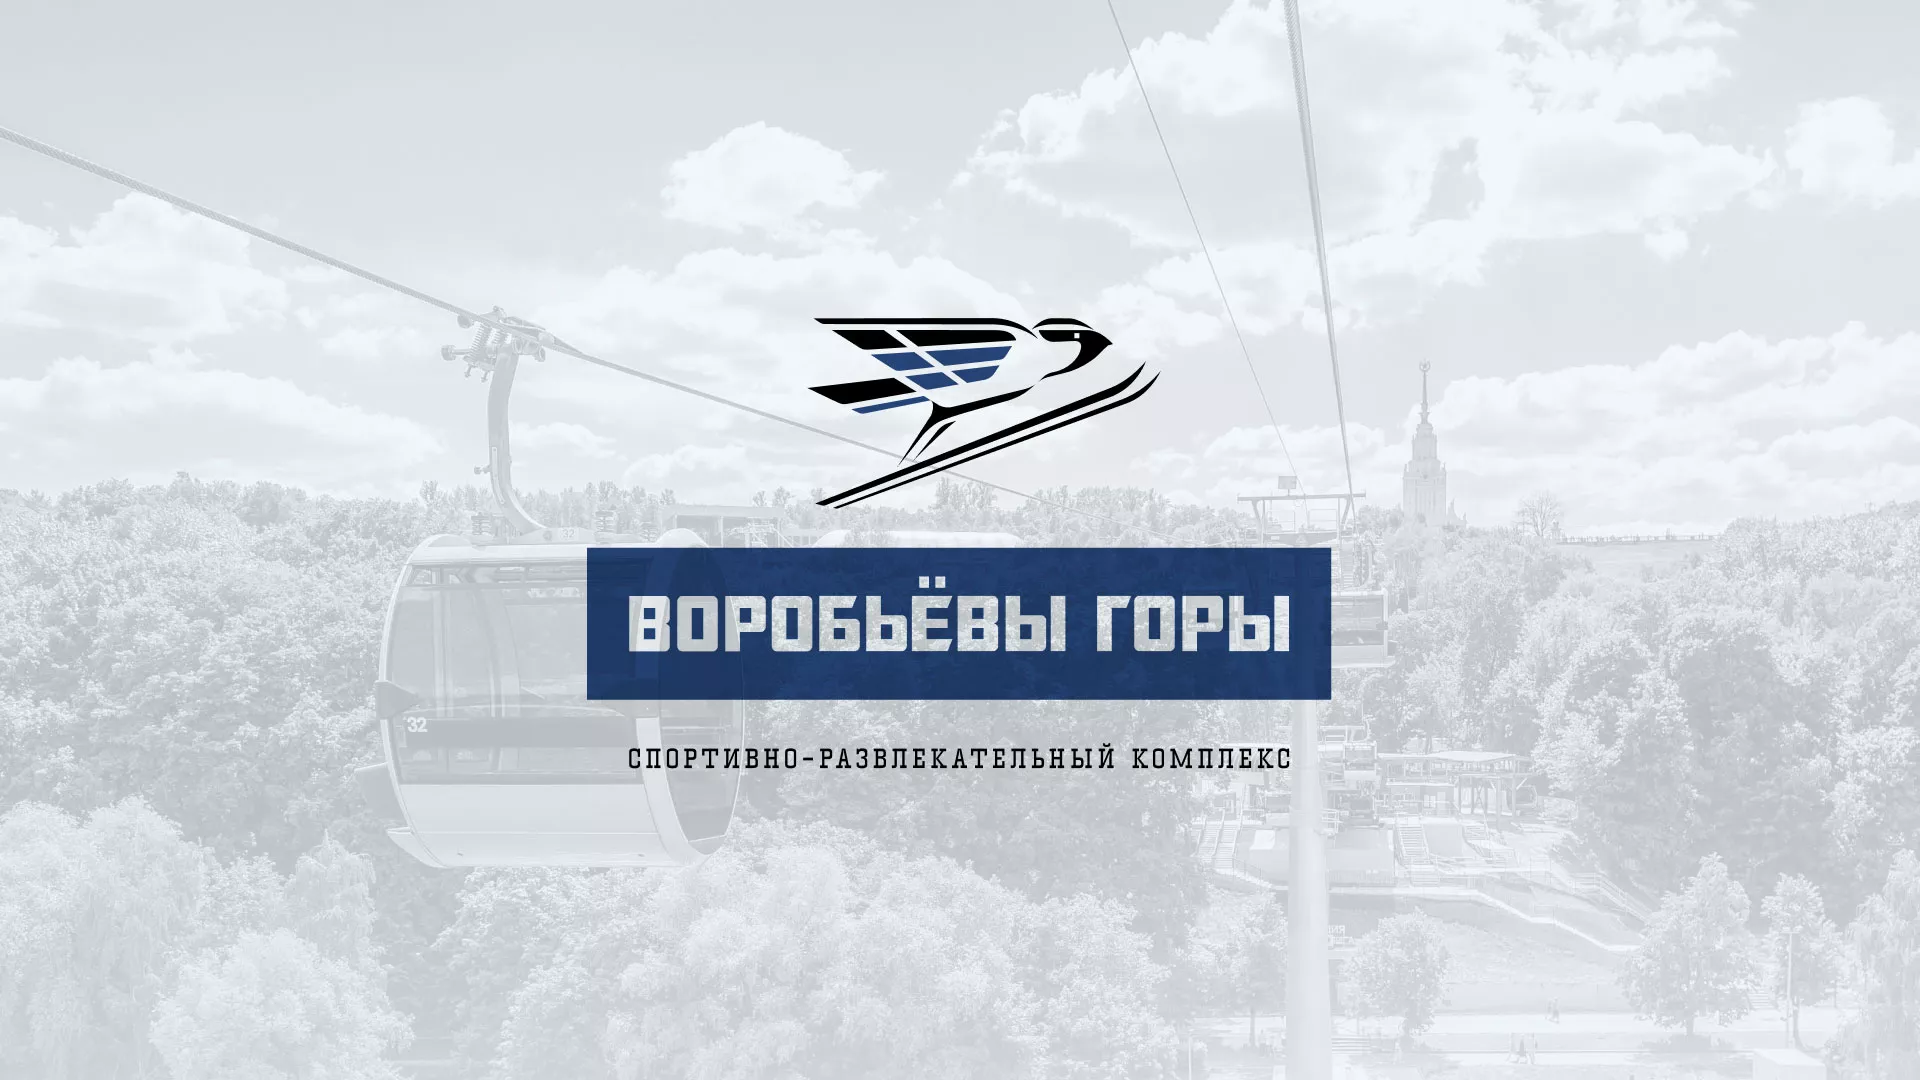 Разработка сайта в Костомукше для спортивно-развлекательного комплекса «Воробьёвы горы»